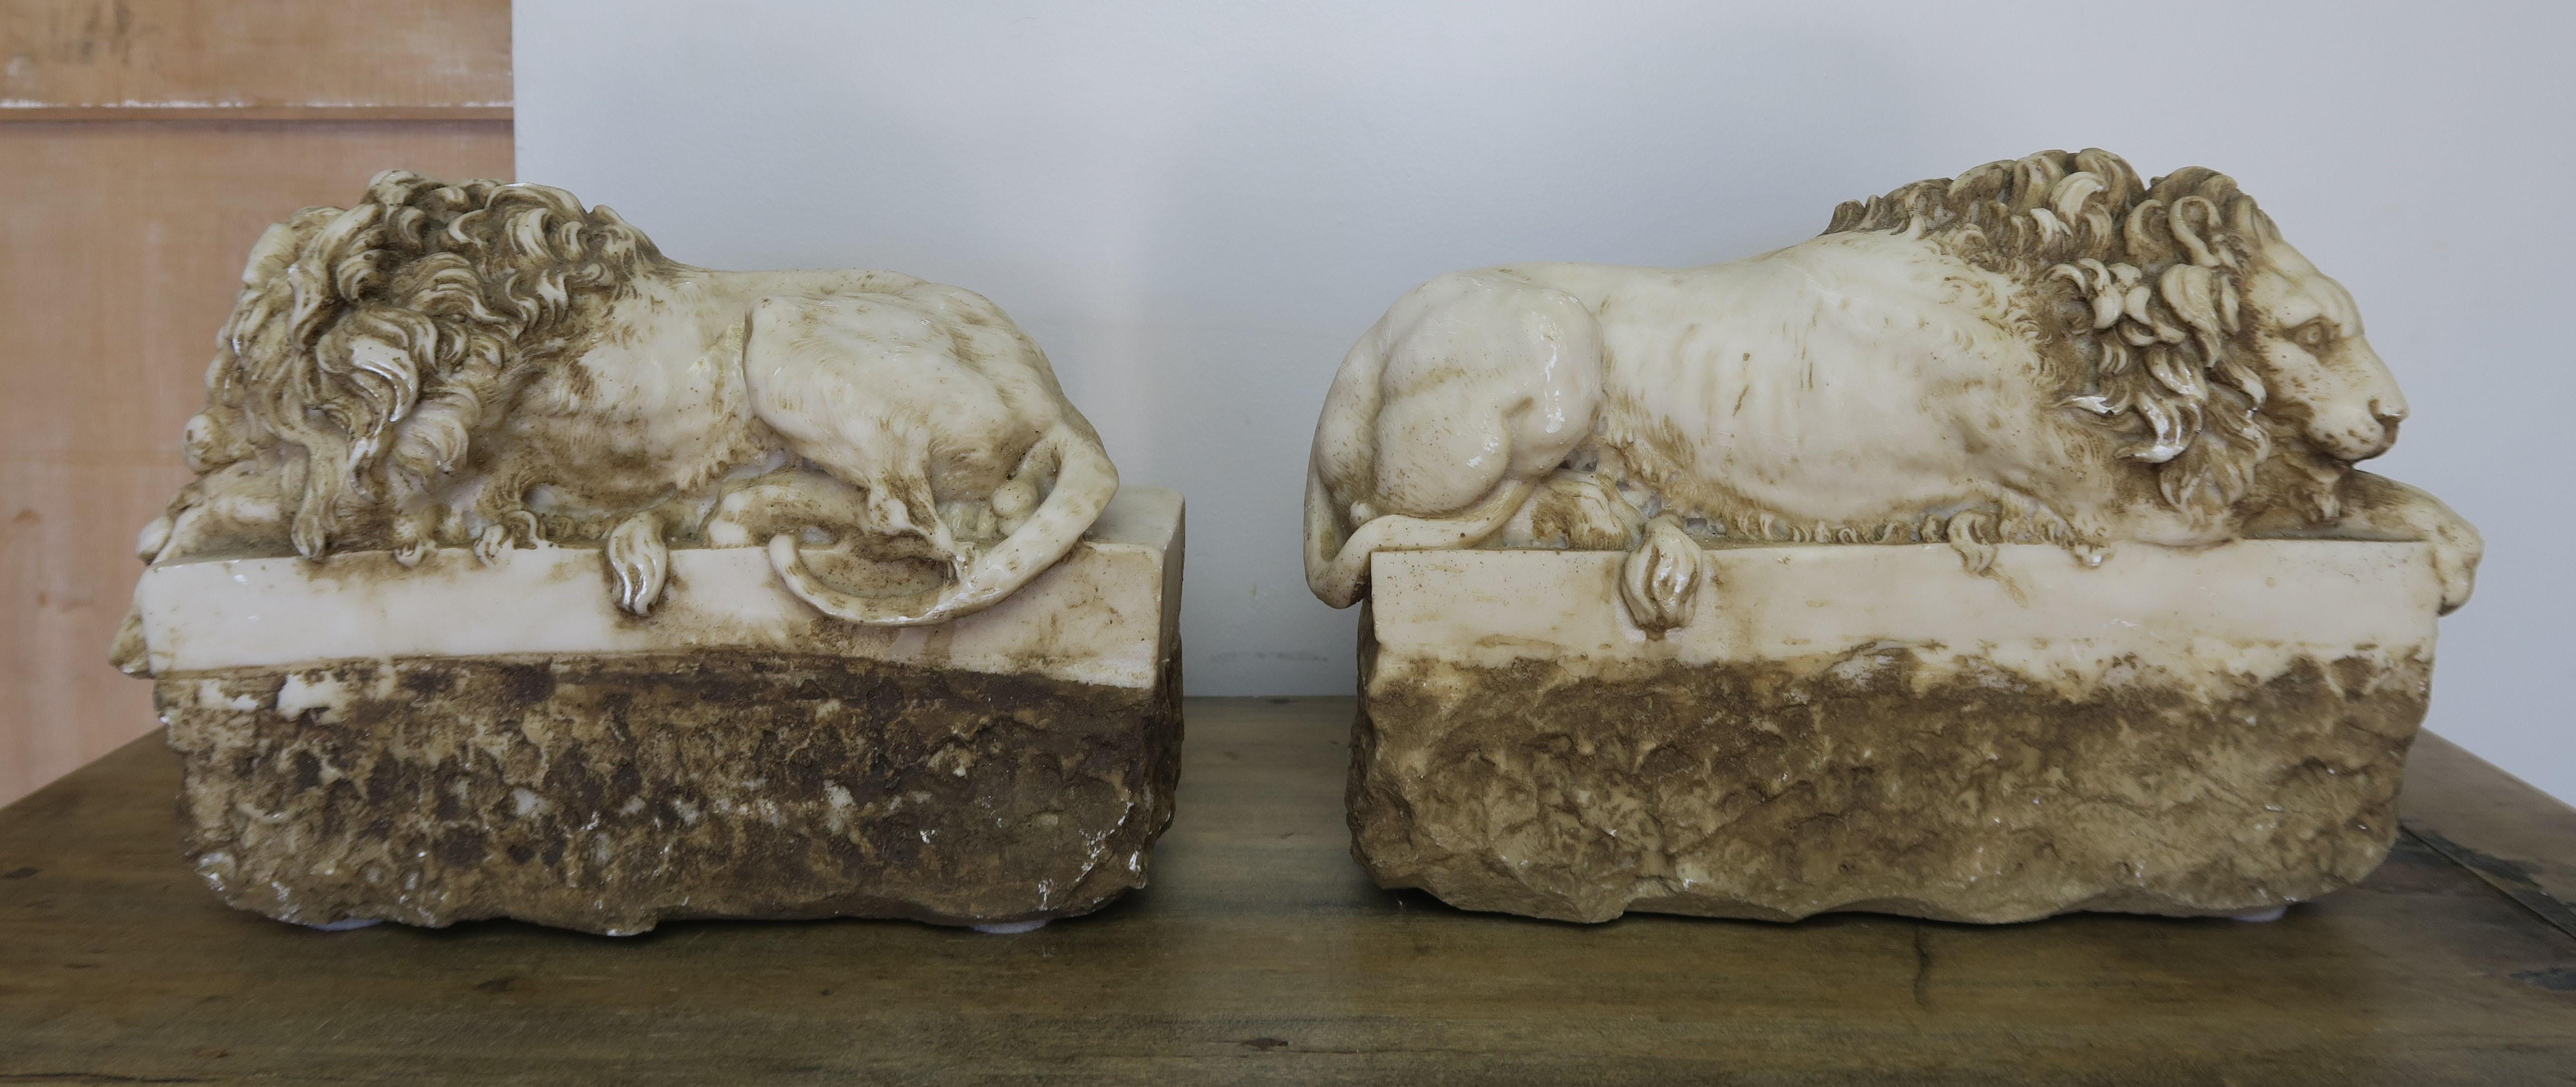 Renaissance Paire de répliques de lions en pierre sculptée originaires d'Antonio Canova